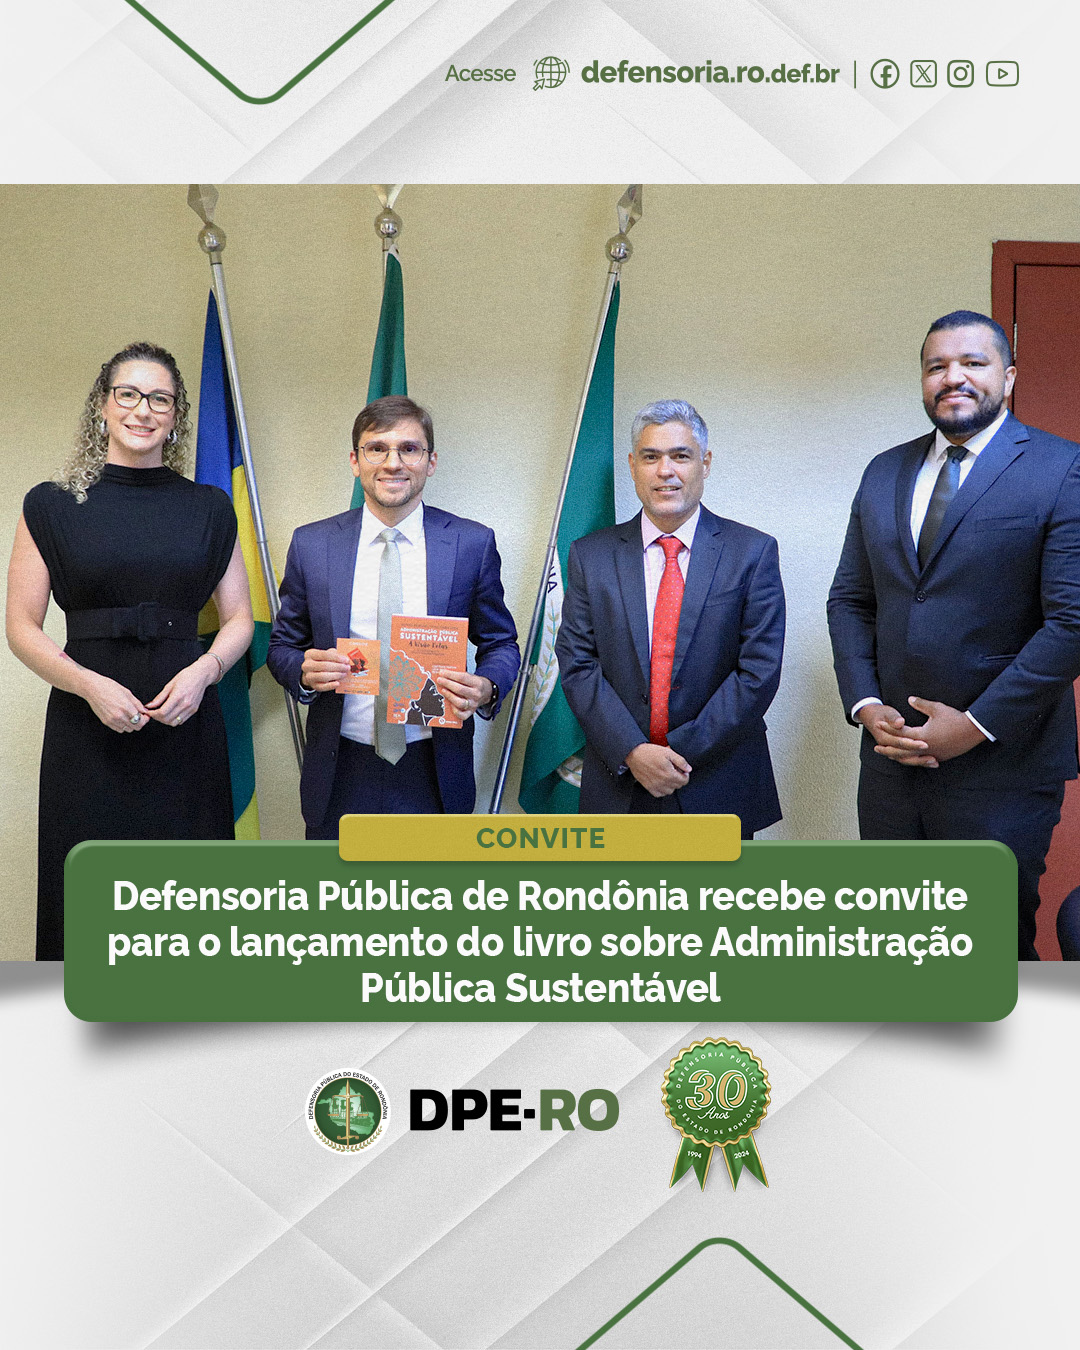 Defensoria Pública de Rondônia recebe convite para o lançamento do livro sobre Administração Pública Sustentável